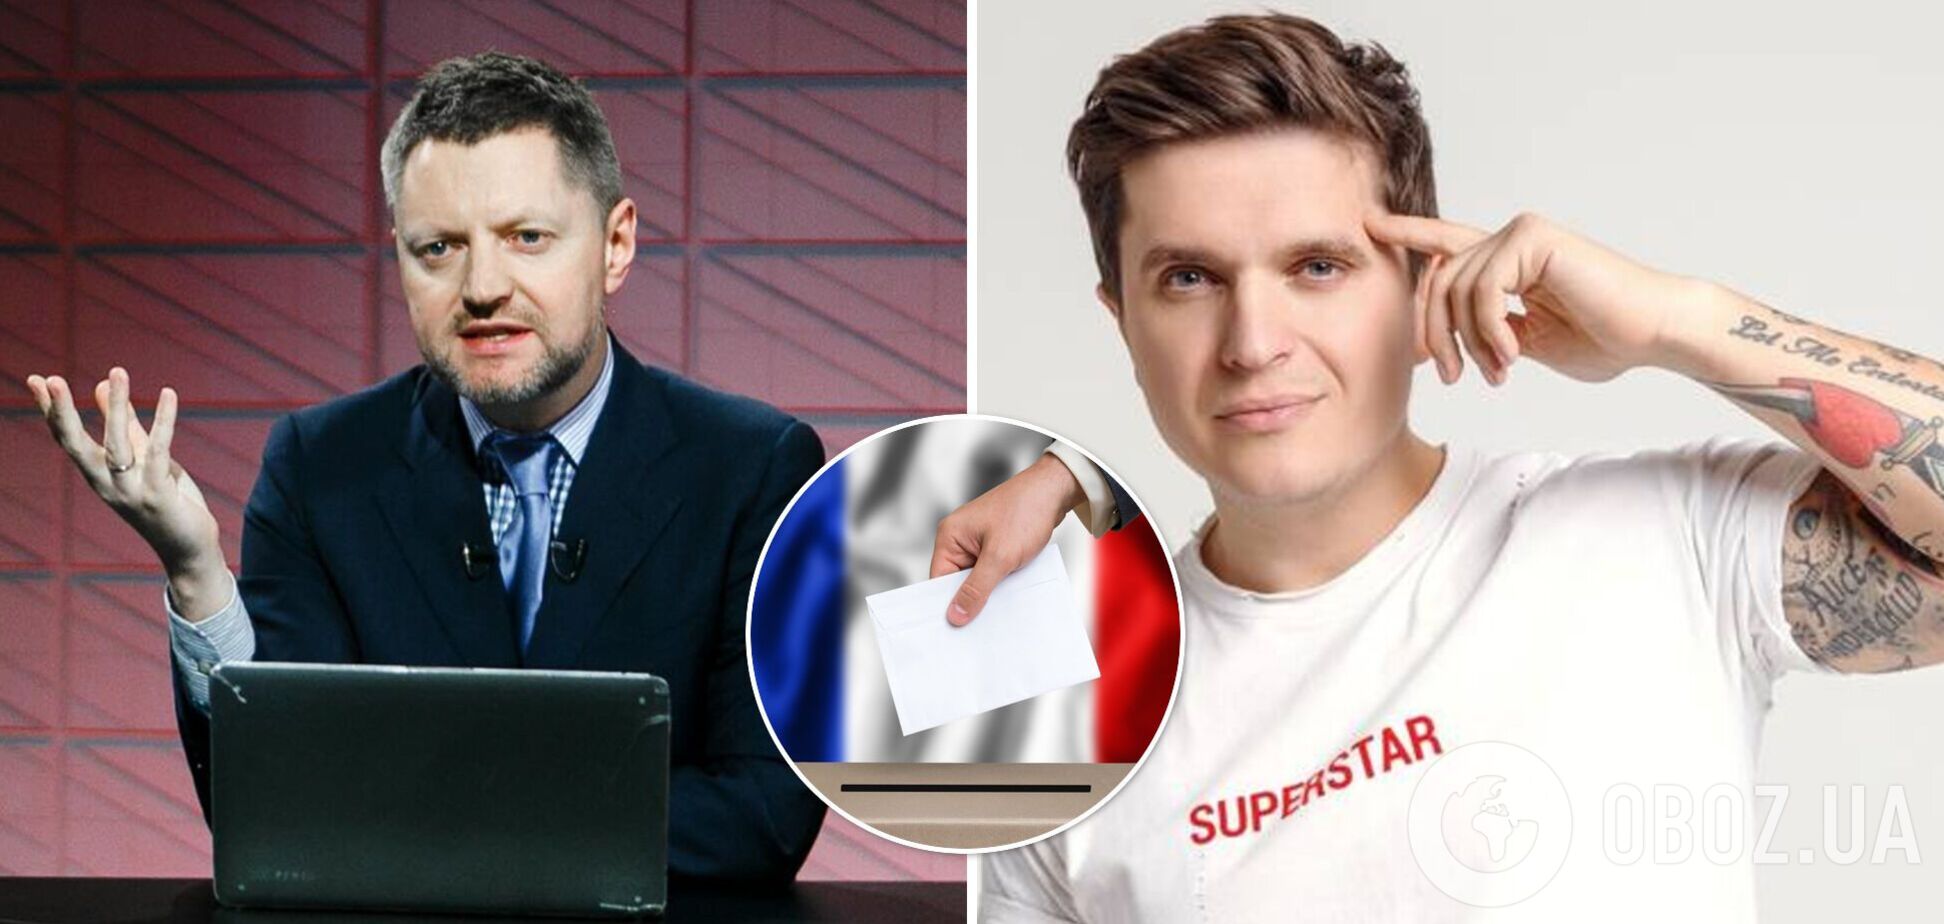 Анатолич на примере выборов во Франции доказал, что Пивоваров и другие российские оппозиционеры манипулируют пропагандой. Видео